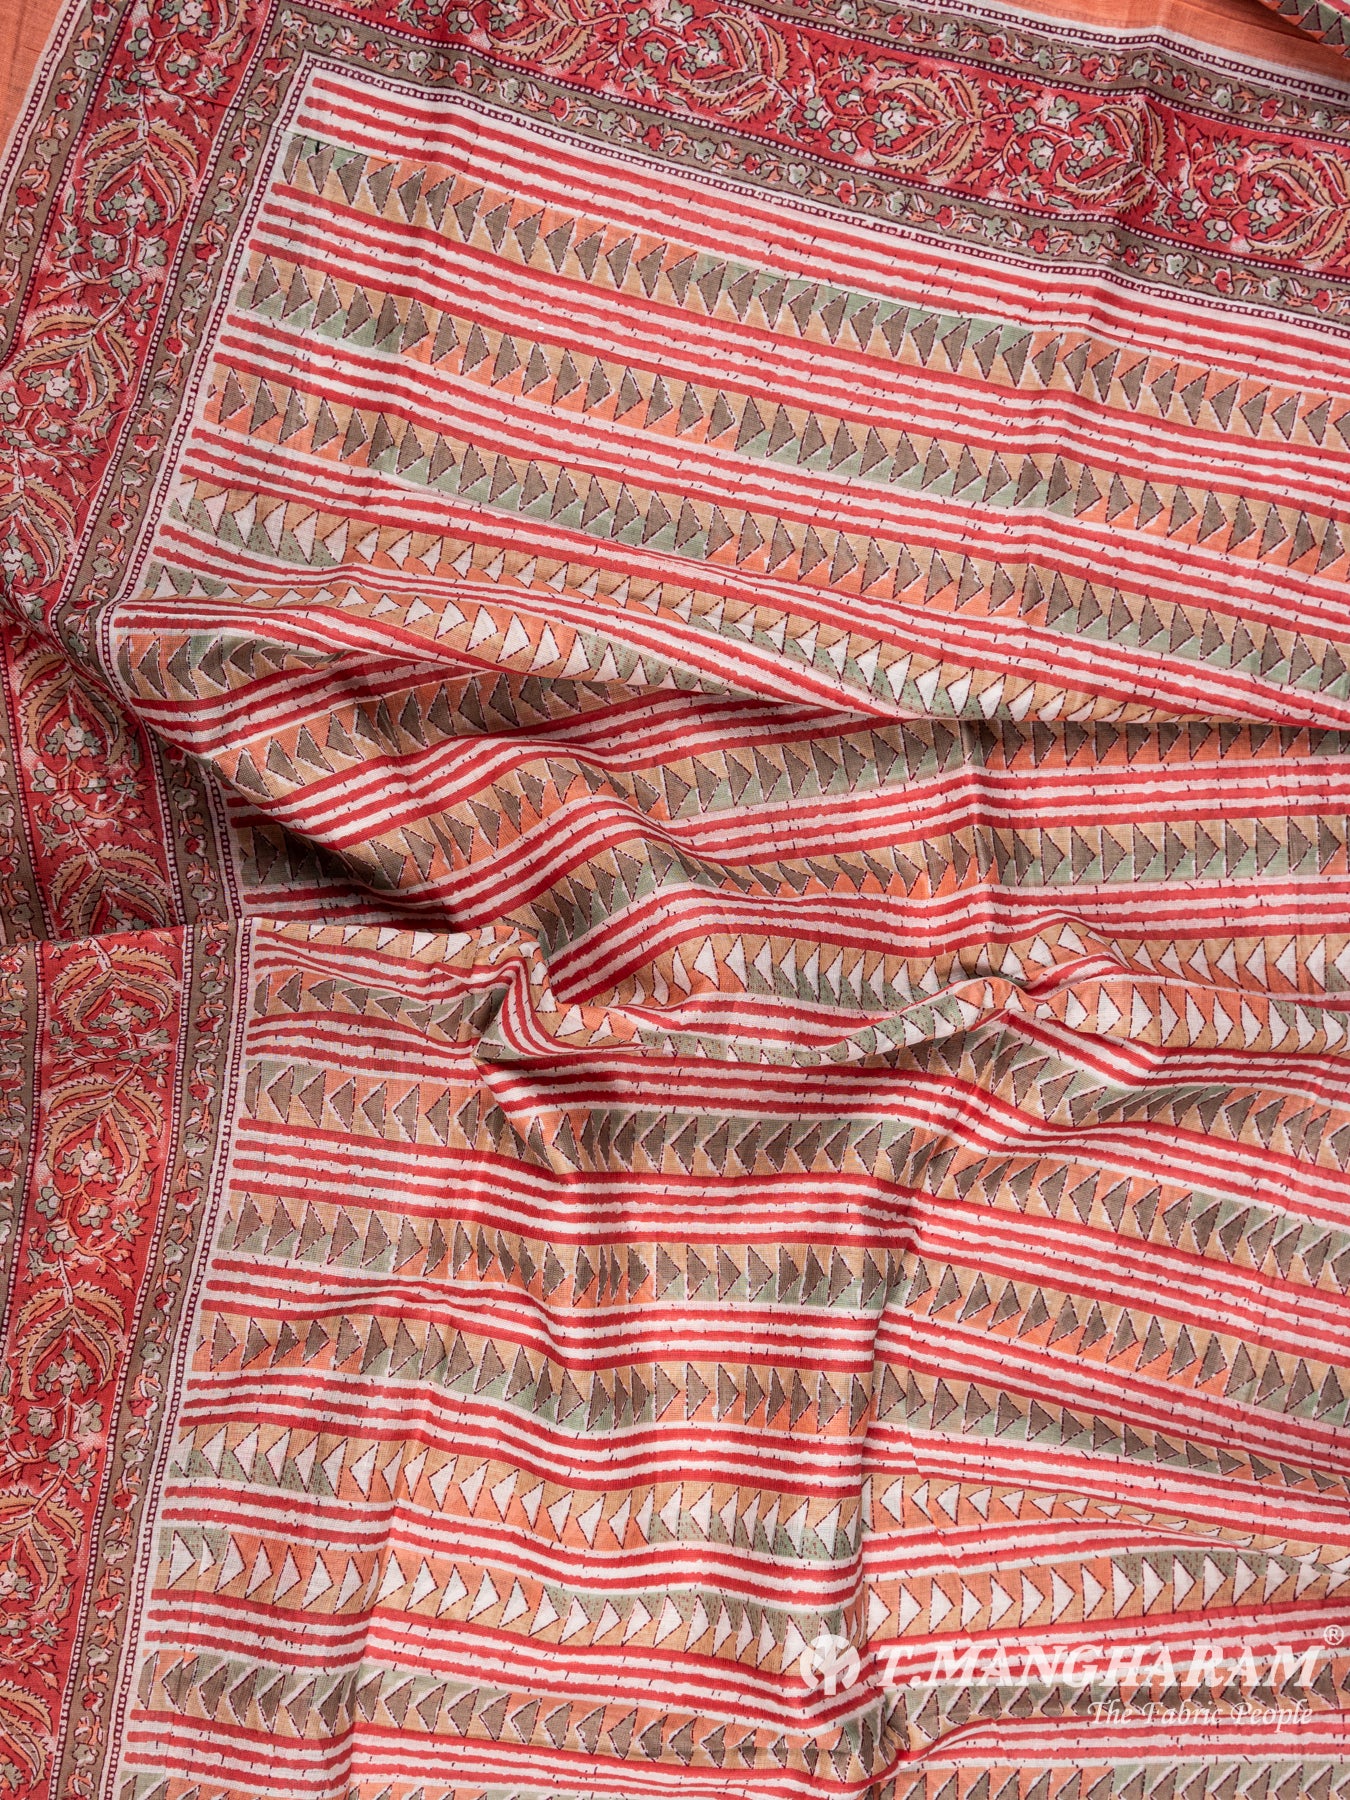 Peach Cotton Chudidhar Fabric Set - EG1441 view-2